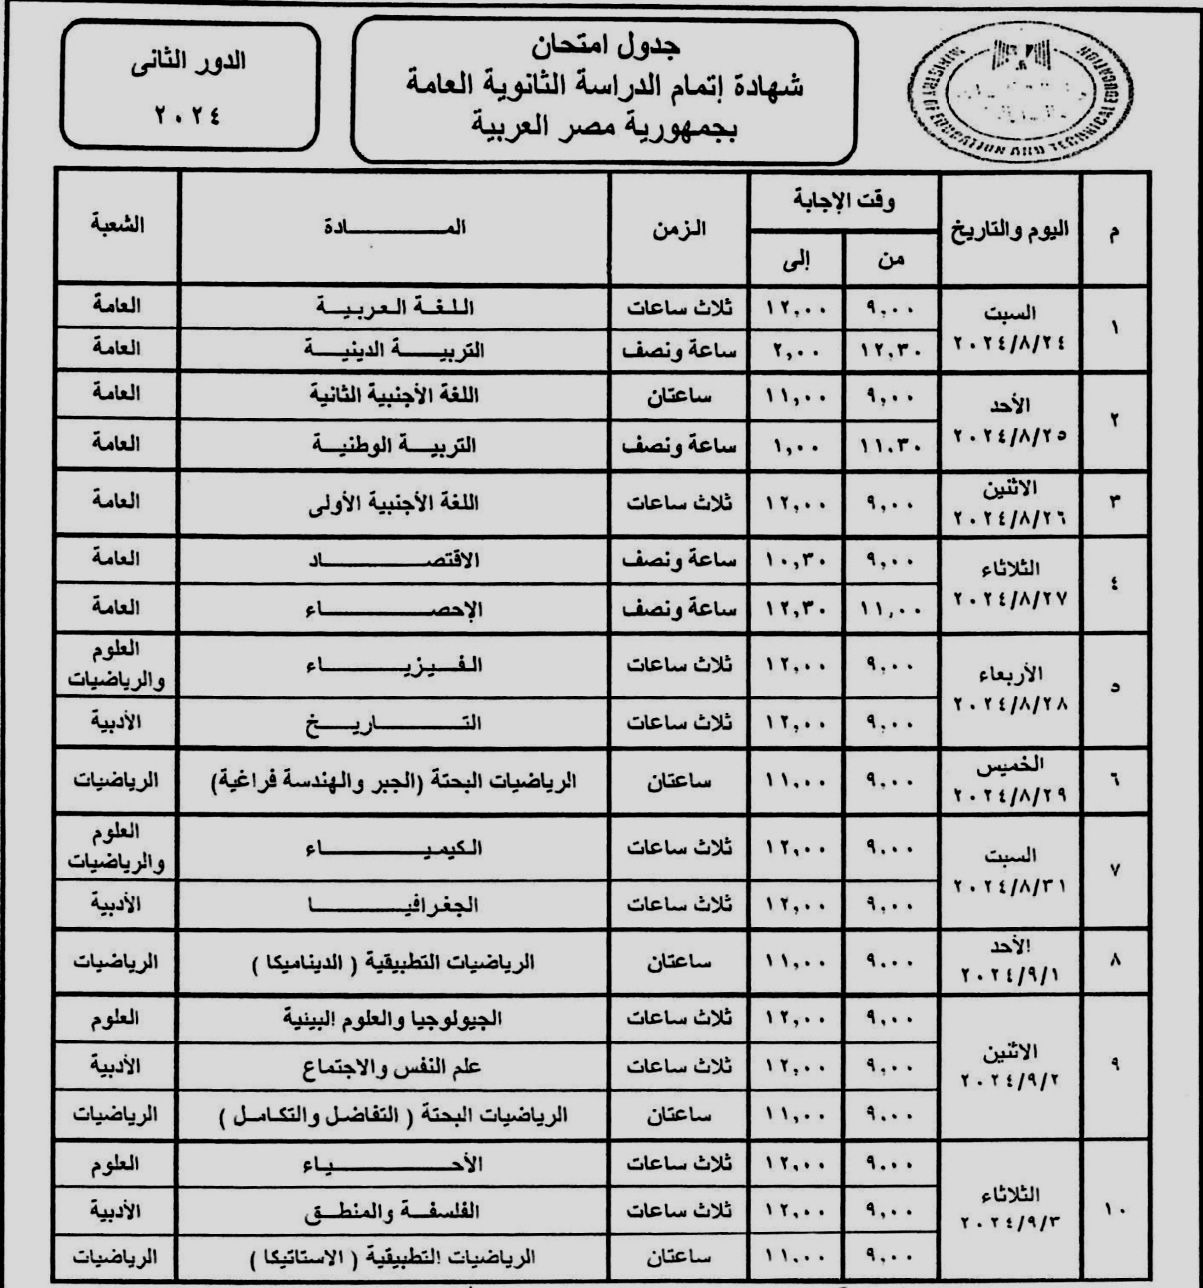 جدول اللغة العربية والتربية الدينية